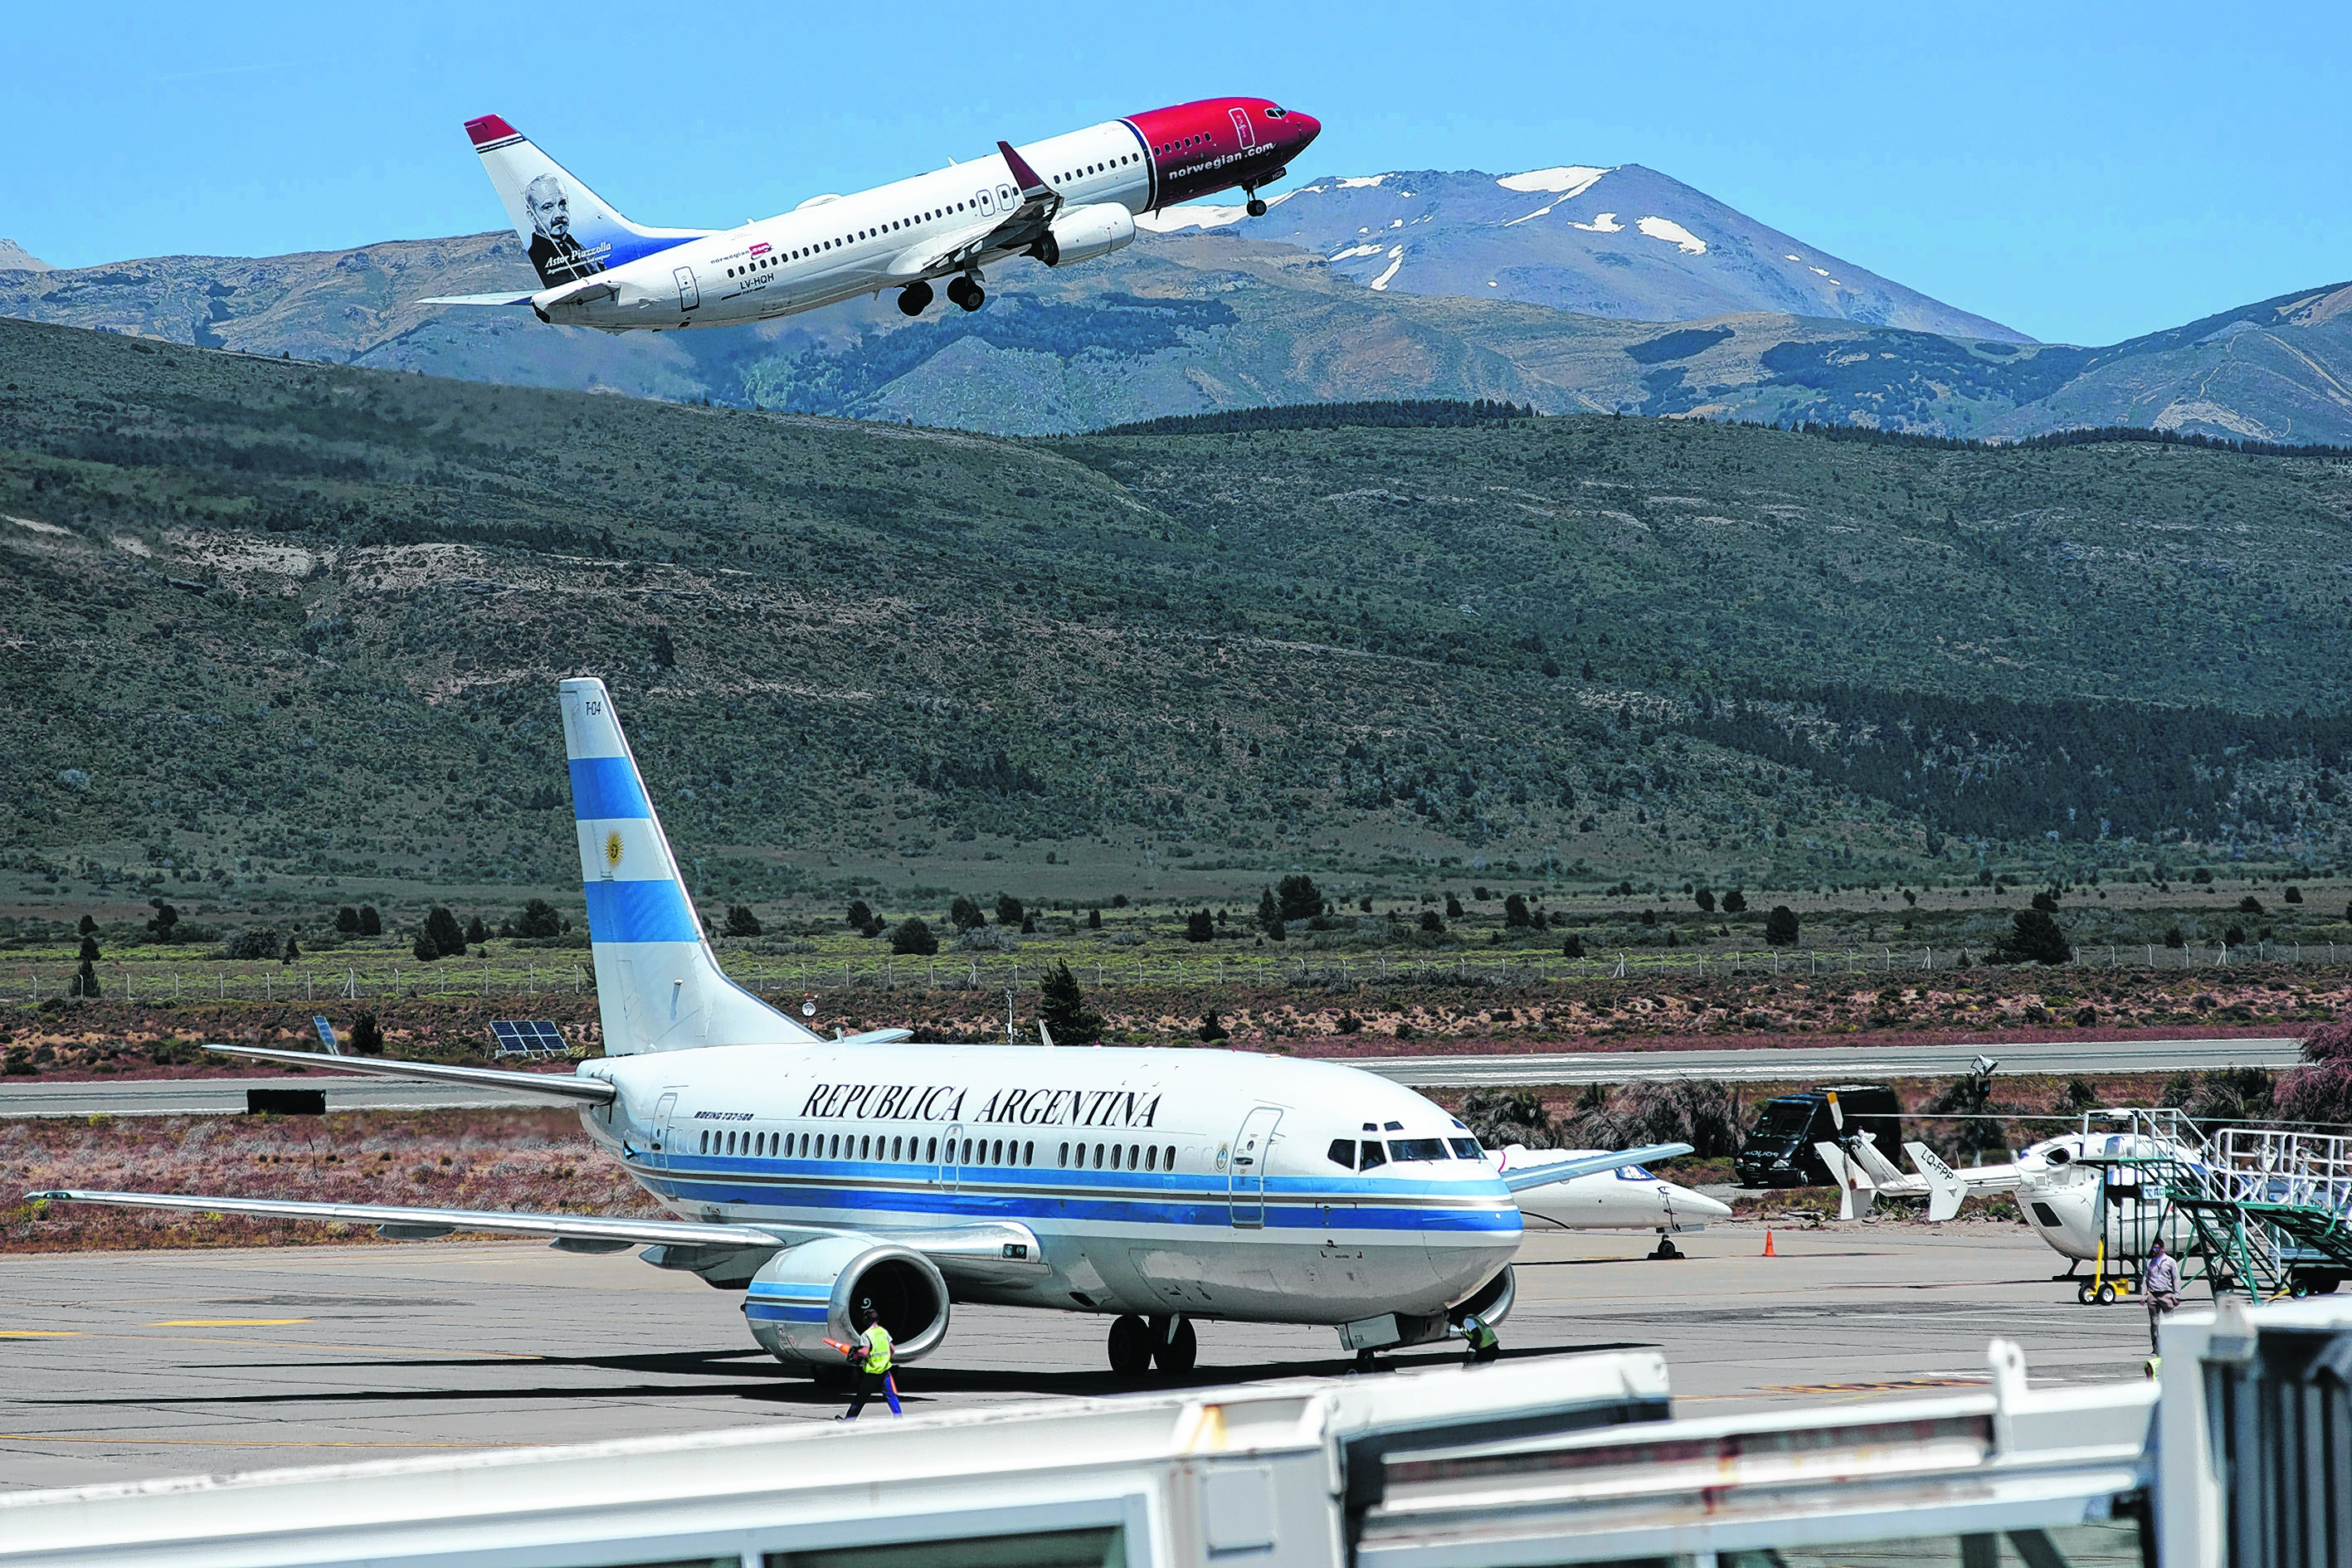 El movimiento en el aeropuerto de Bariloche crece cada año. Esperan que las ampliaciones estén terminadas para el invierno. Foto: archivo